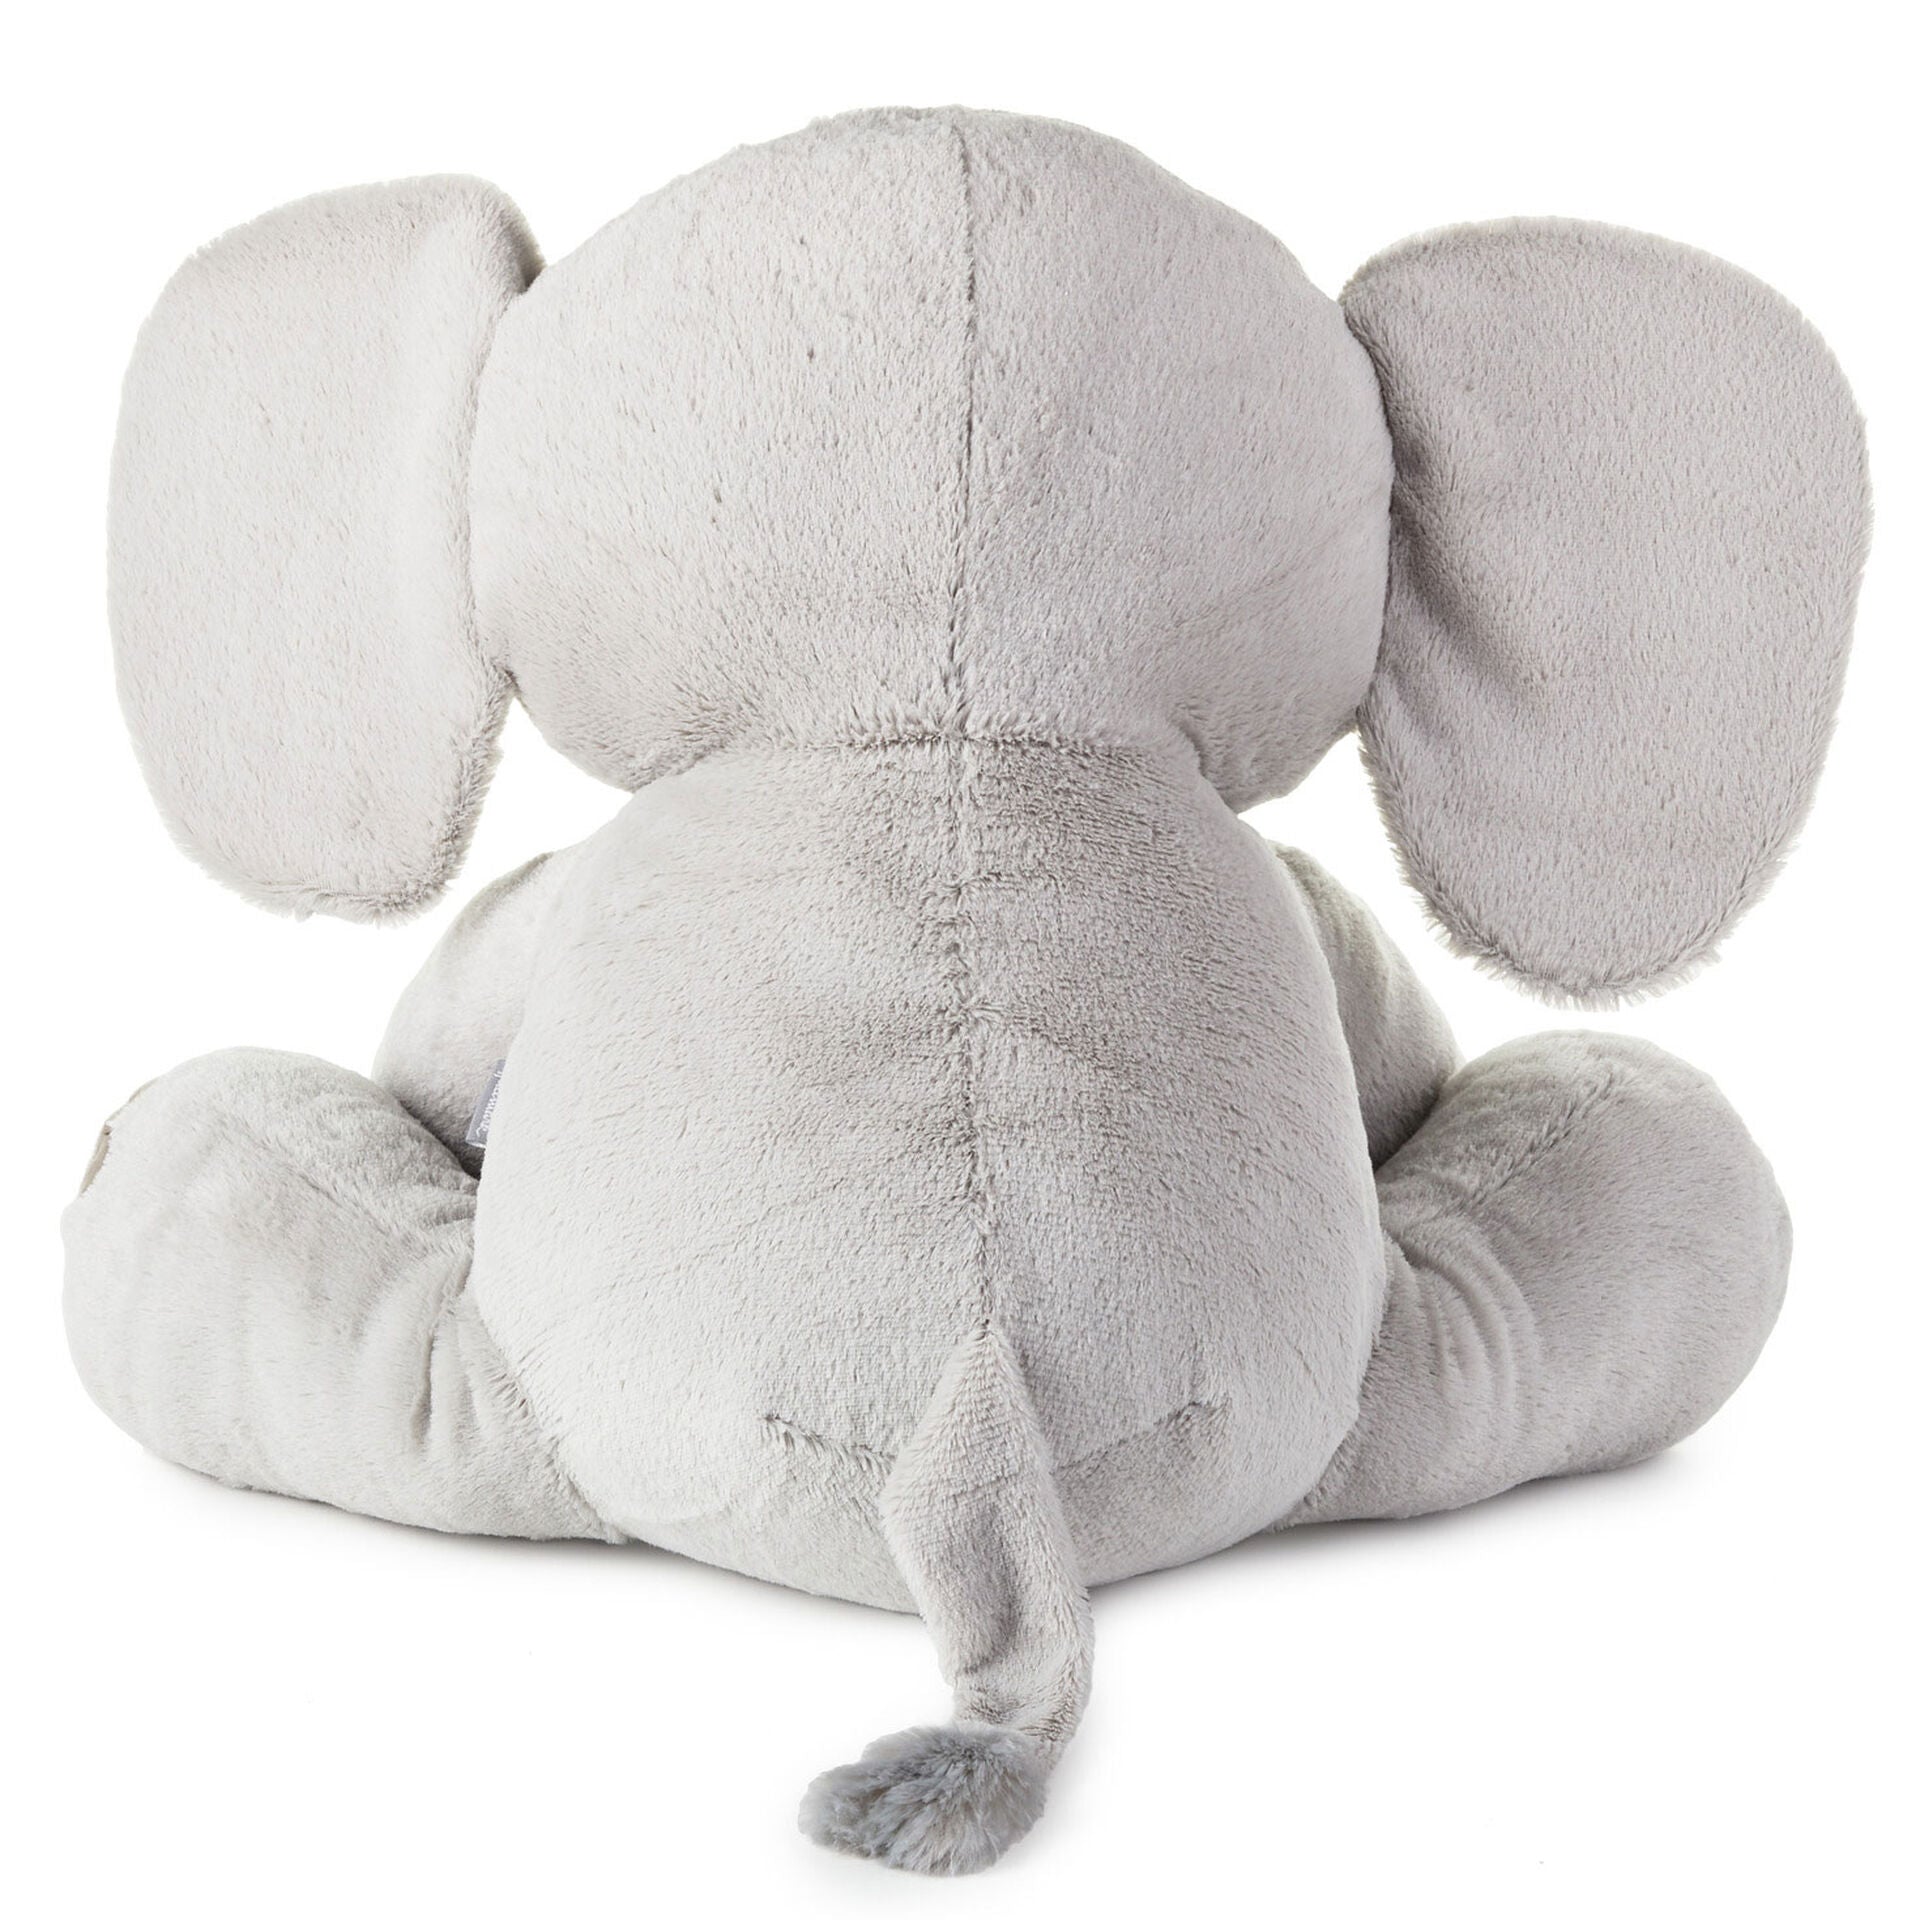 Baby Elephant Stuffed Animal, 20"